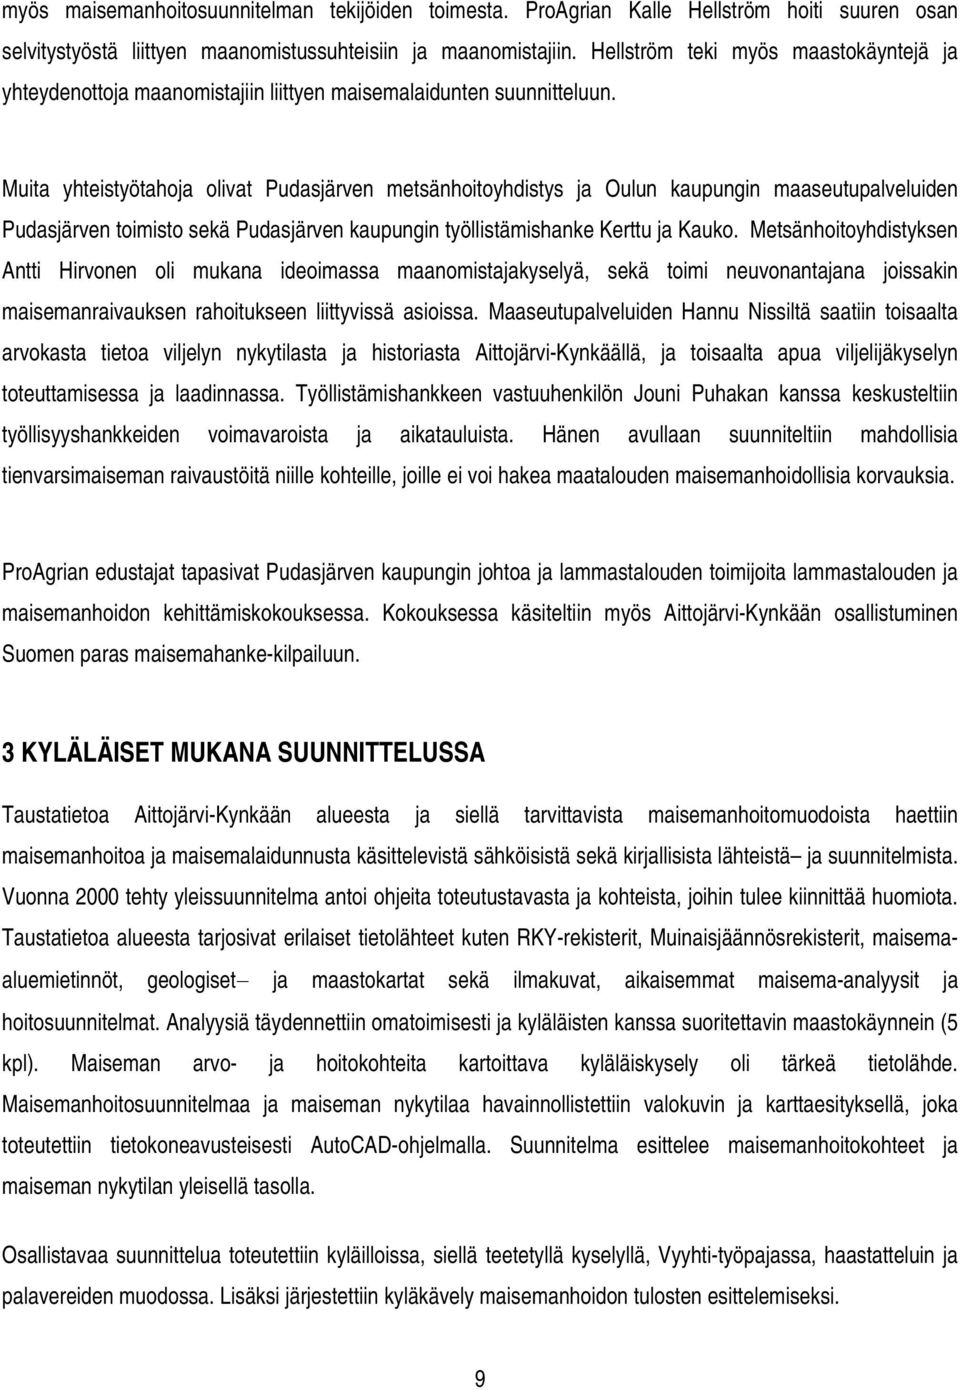 Muita yhteistyötahoja olivat Pudasjärven metsänhoitoyhdistys ja Oulun kaupungin maaseutupalveluiden Pudasjärven toimisto sekä Pudasjärven kaupungin työllistämishanke Kerttu ja Kauko.